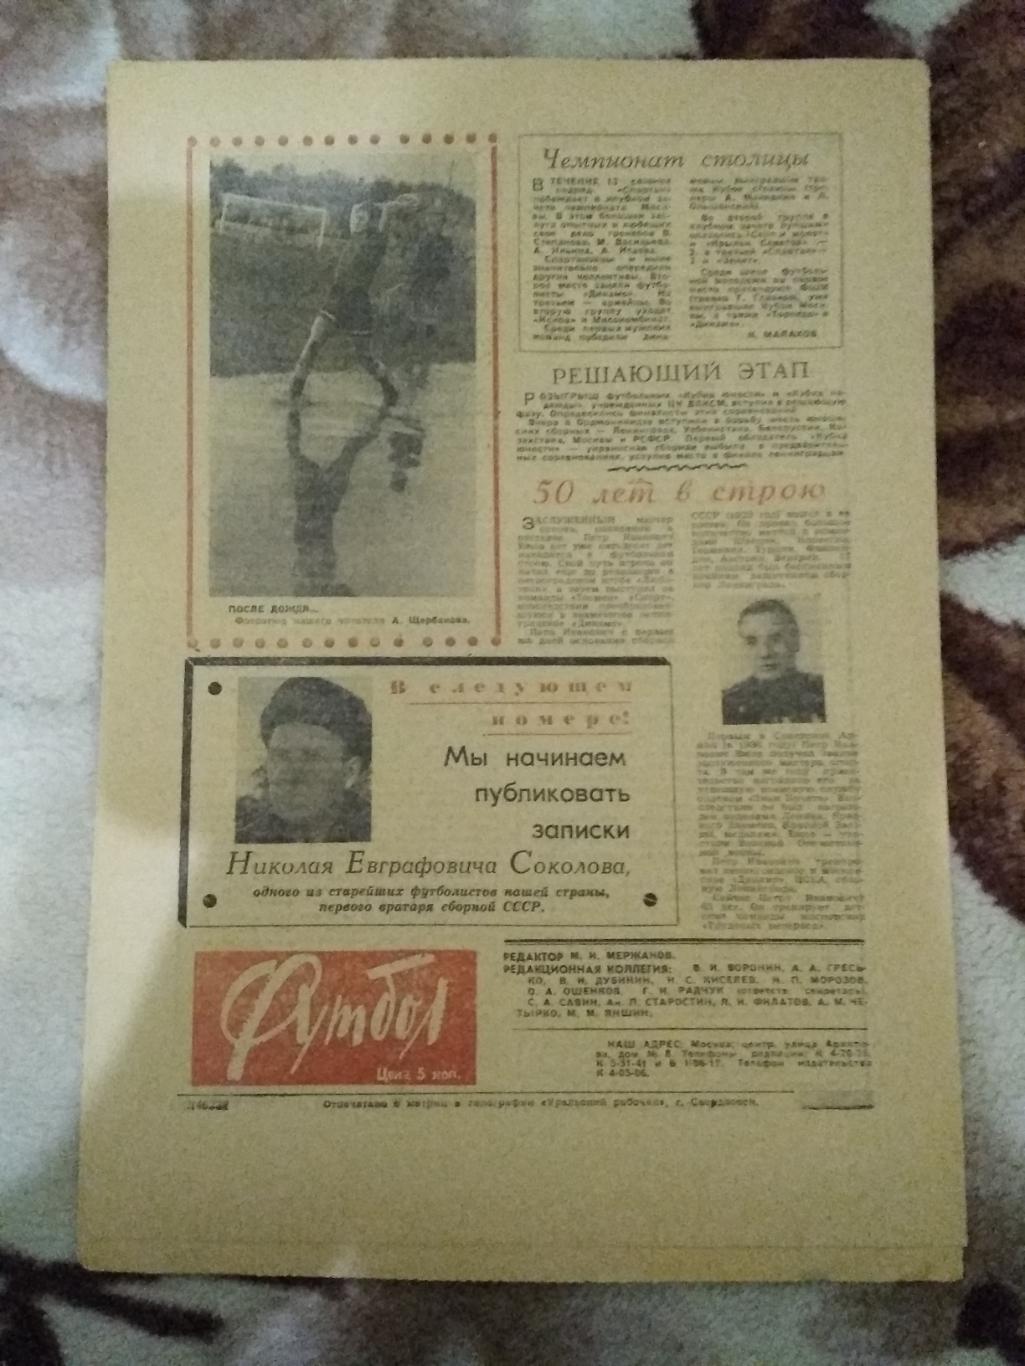 Футбол № 43 1965 г. (Дания - СССР ОЧМ). 2